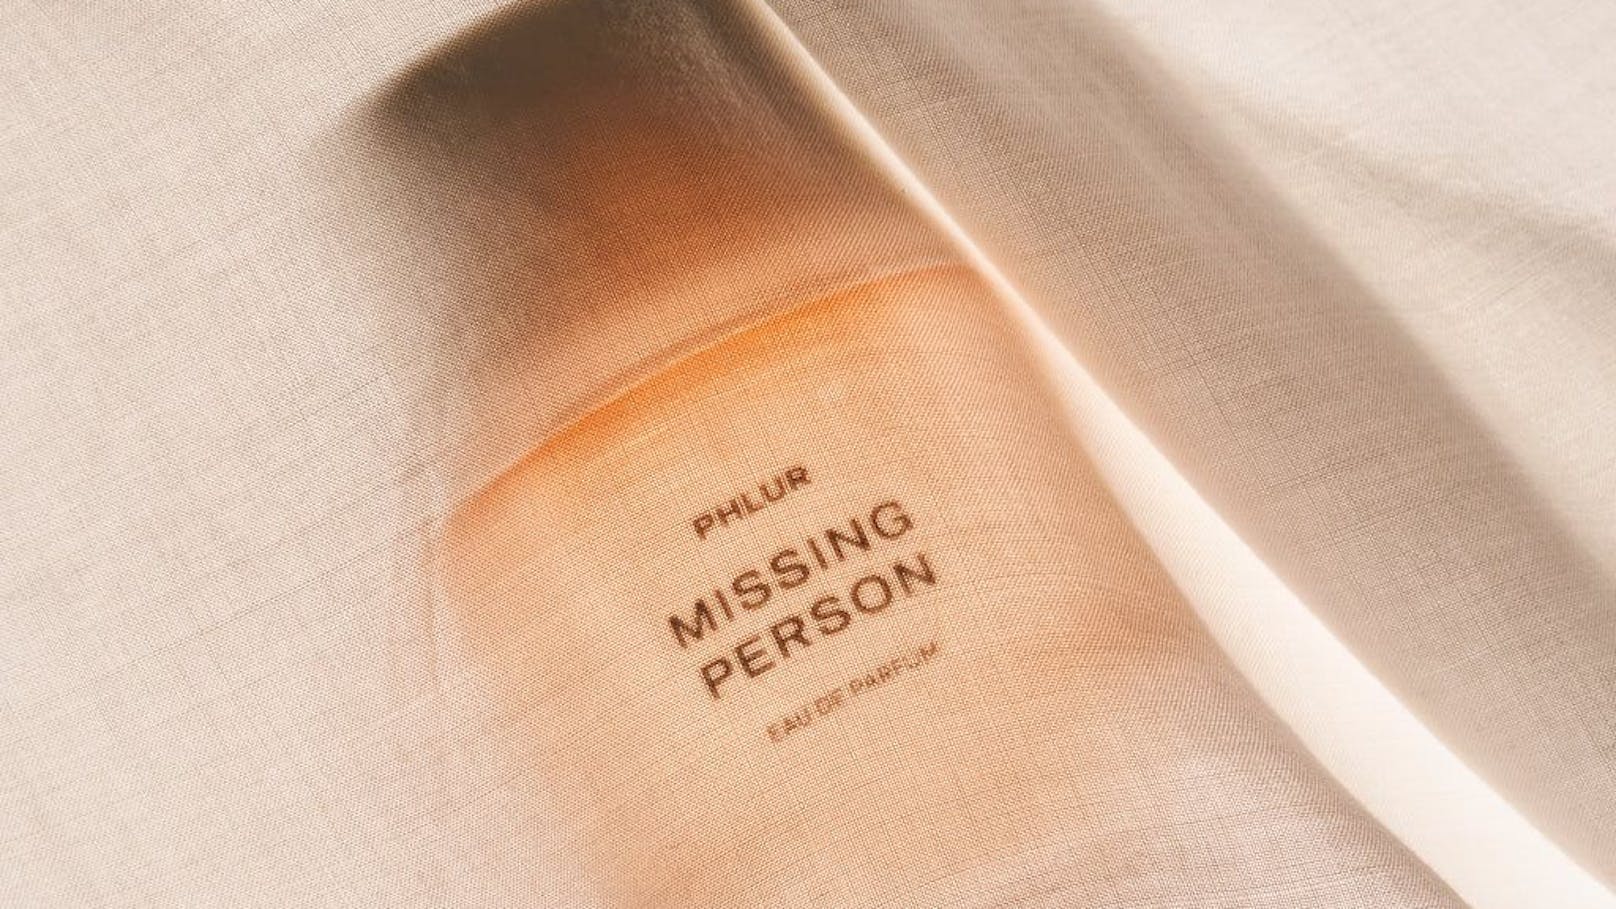 Der Duft "Missing Person" von Phlur soll tiefe Erinnerungen hervorrufen.